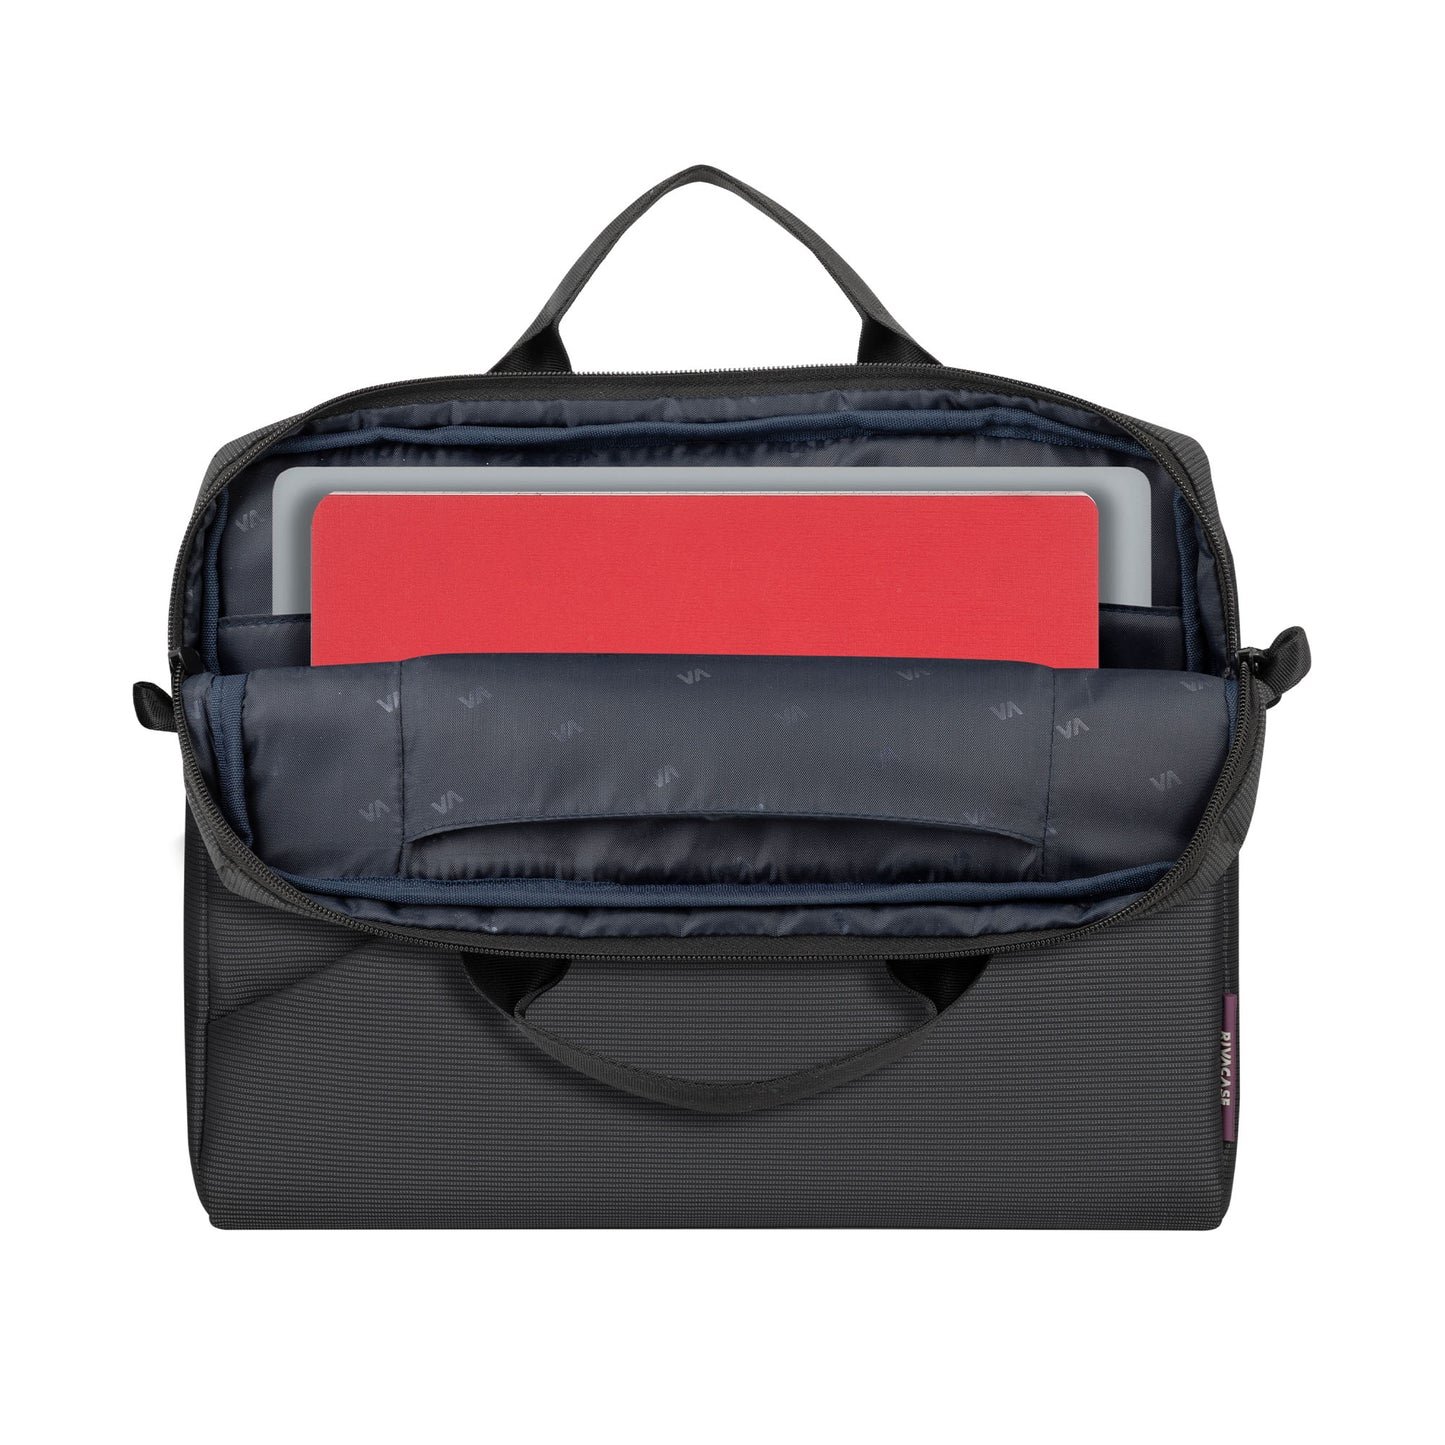 RIVACASE 8720 Laptop Bag 14/13 - Gray/Black